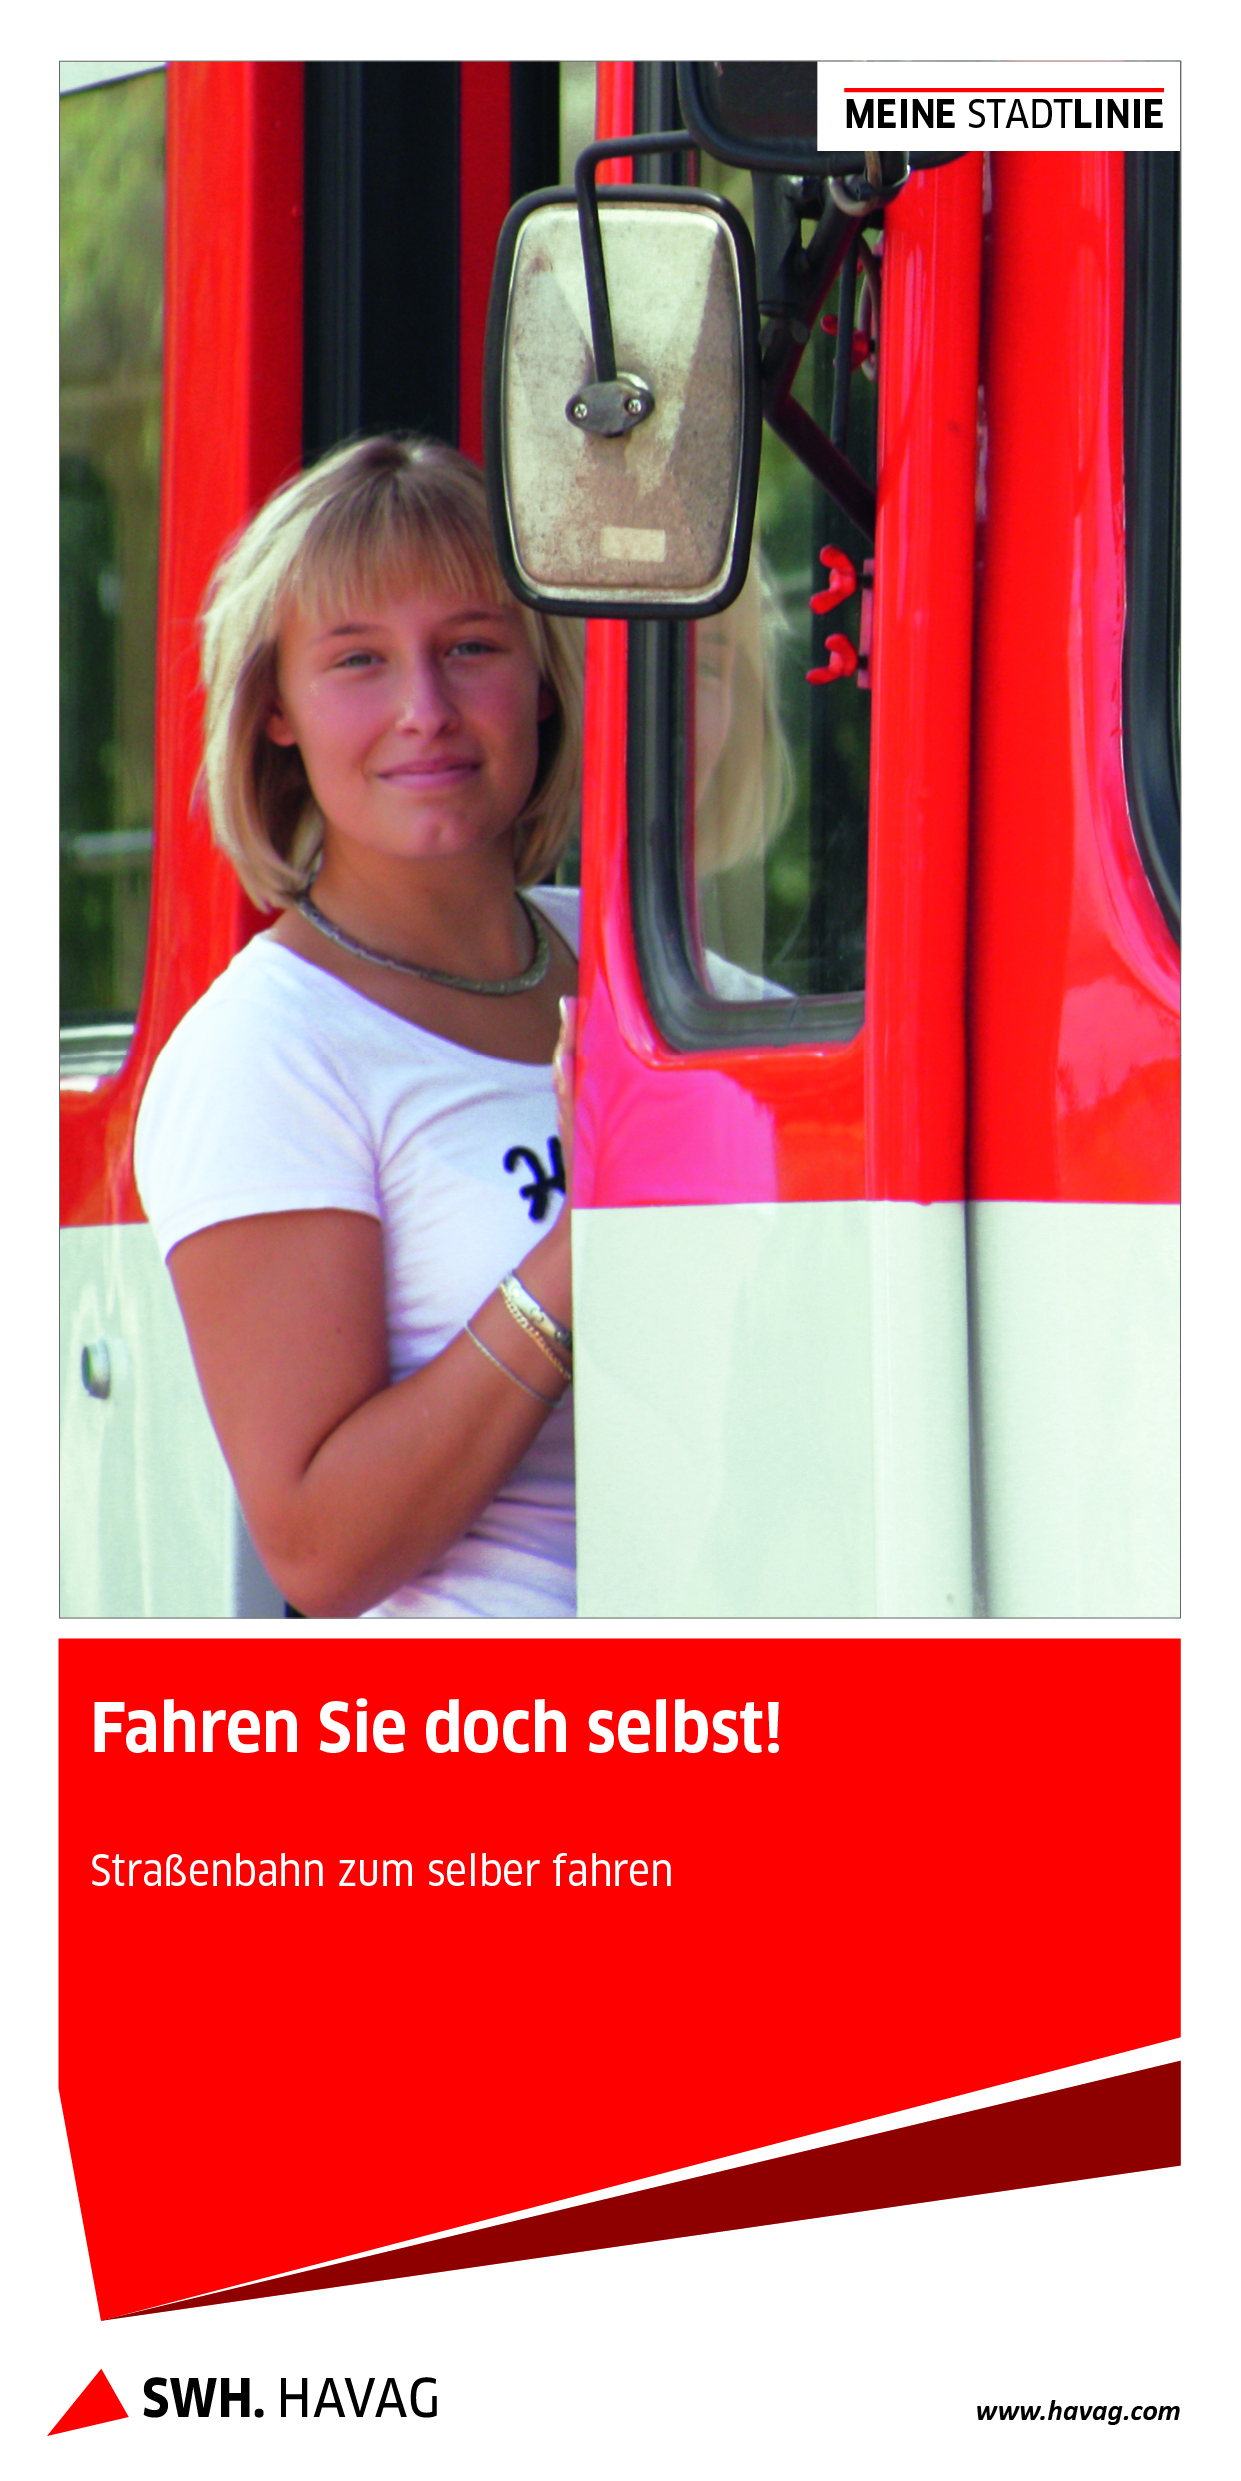 Titelblatt Infobroschüre Straßenbahn selberfahren